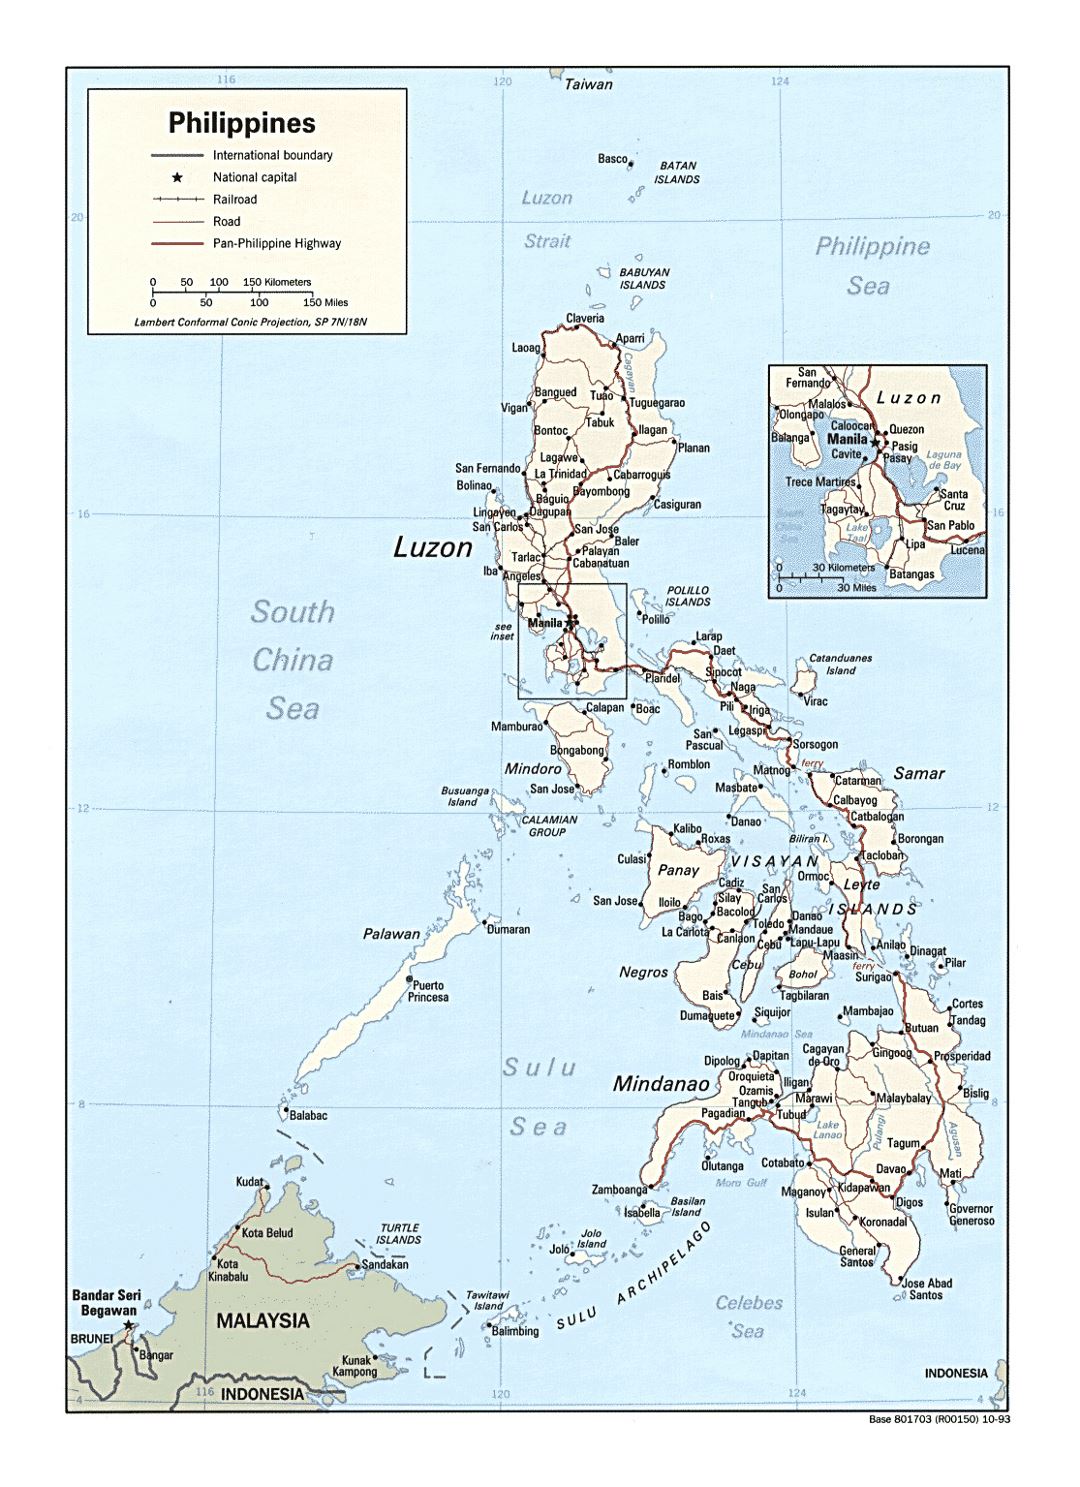 Detallado mapa político de Filipinas con carreteras, ferrocarriles y principales ciudades - 1993